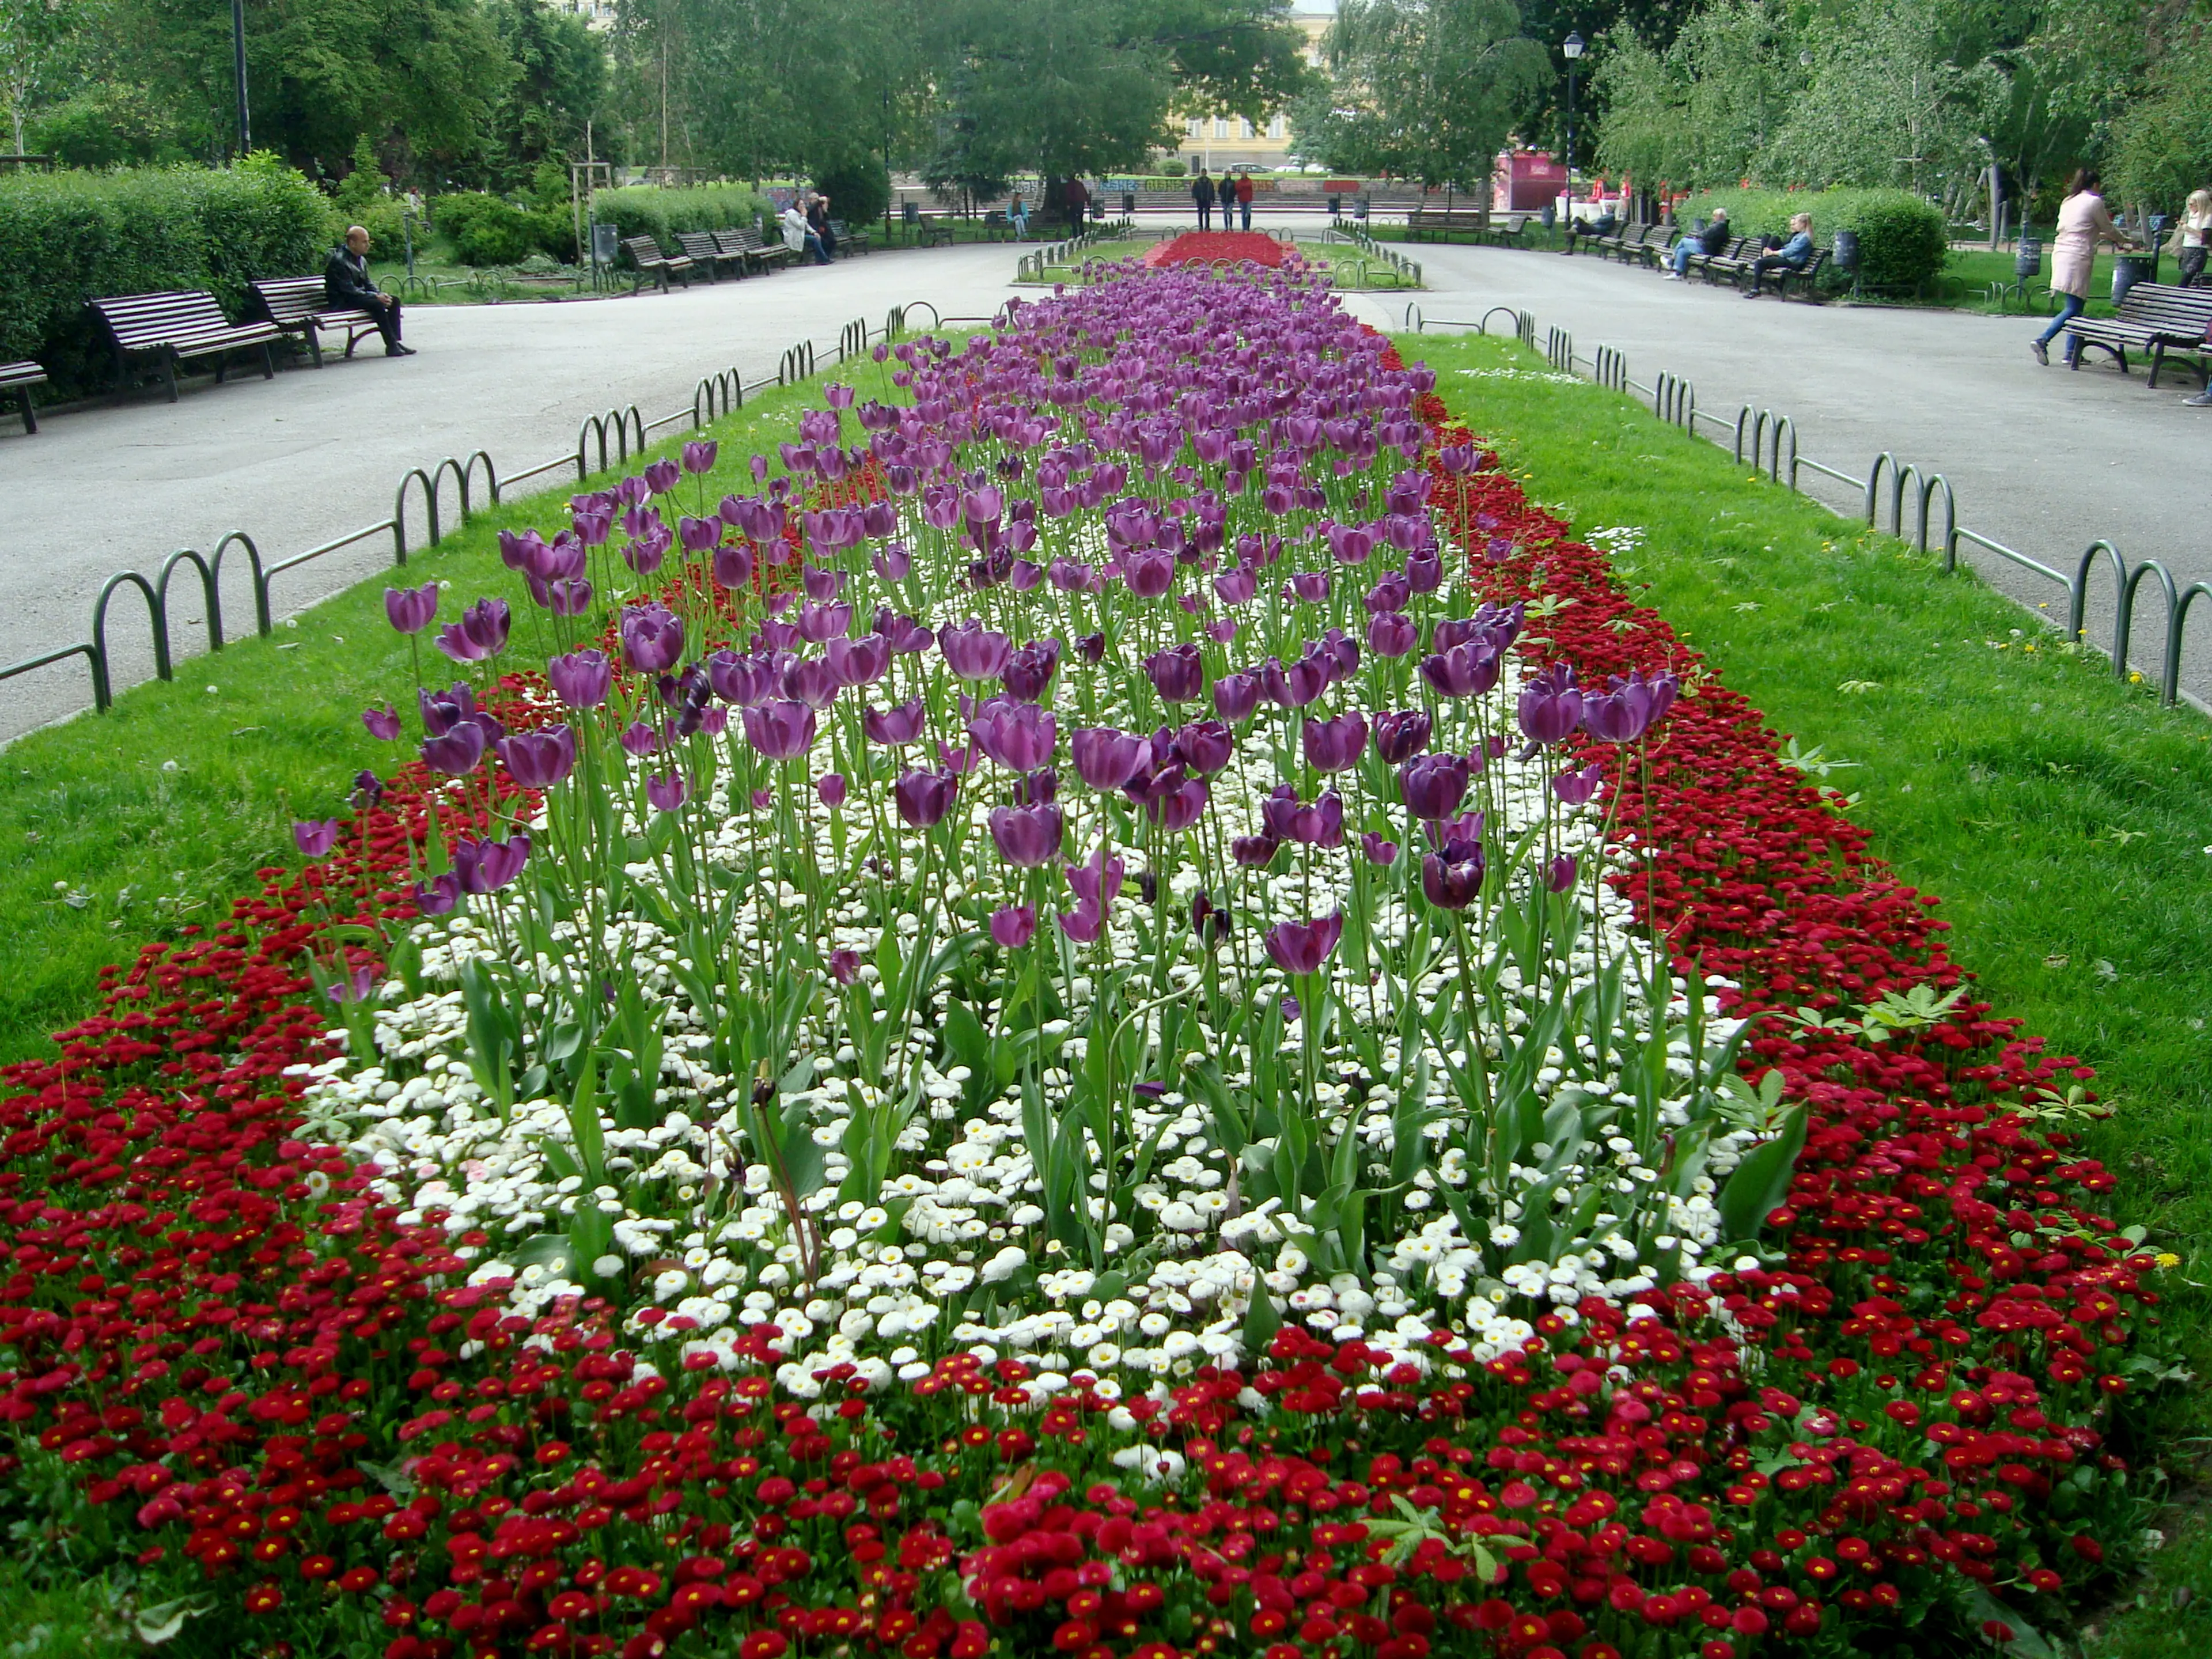 Sofia City Garden